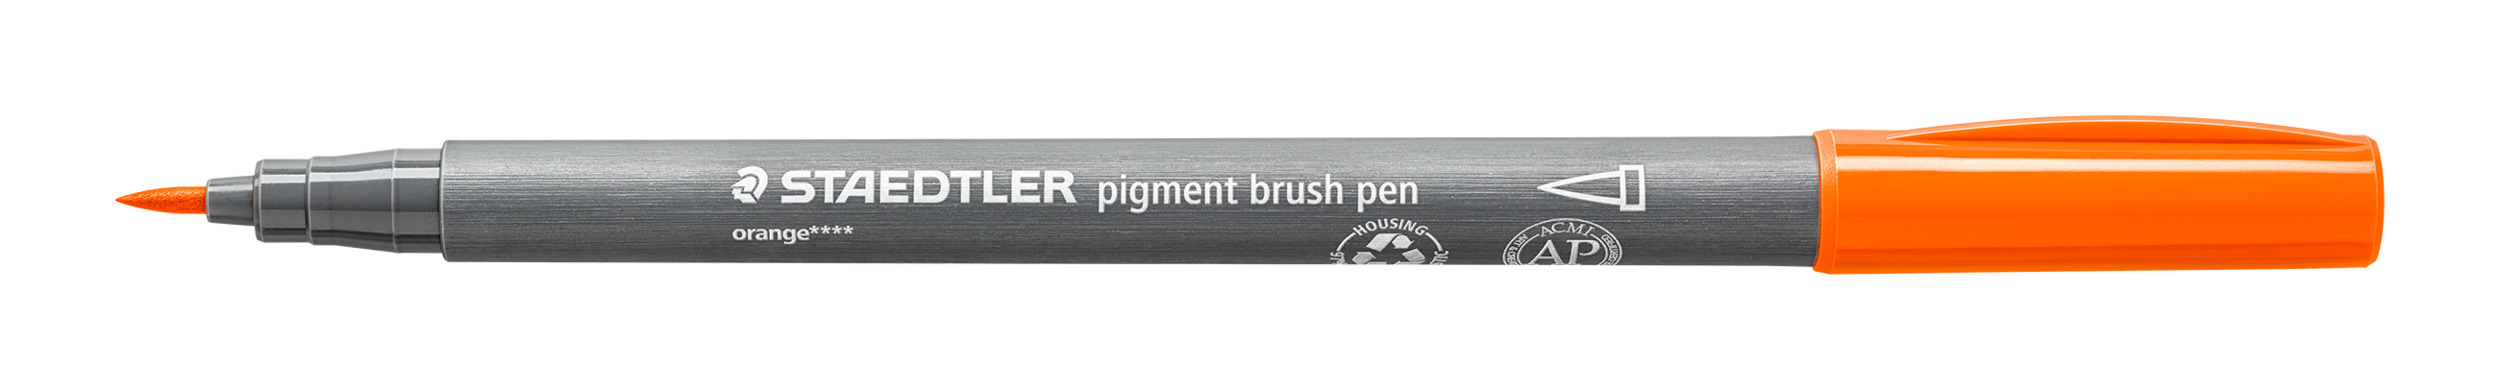 Pigment brush pen